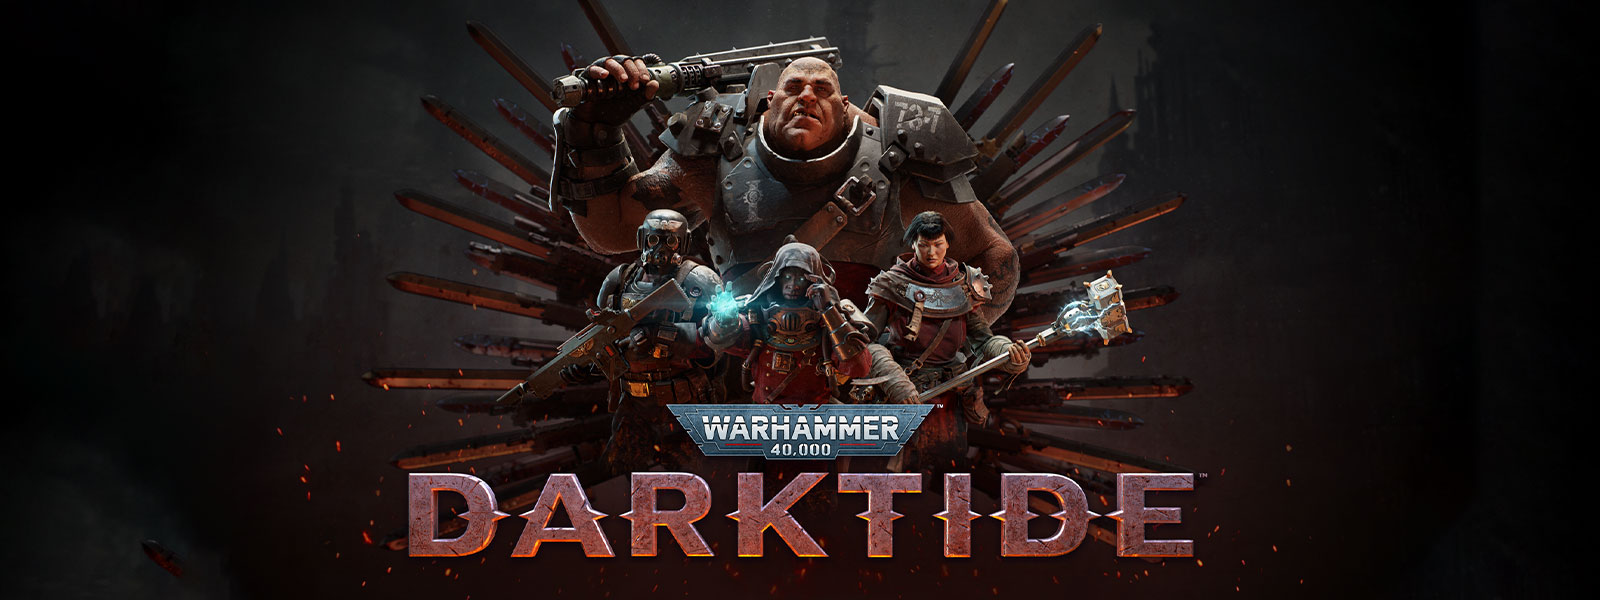 Warhammer 40,000: Darktide, Gepantserde personages poseren voor een motief van een zwaard.